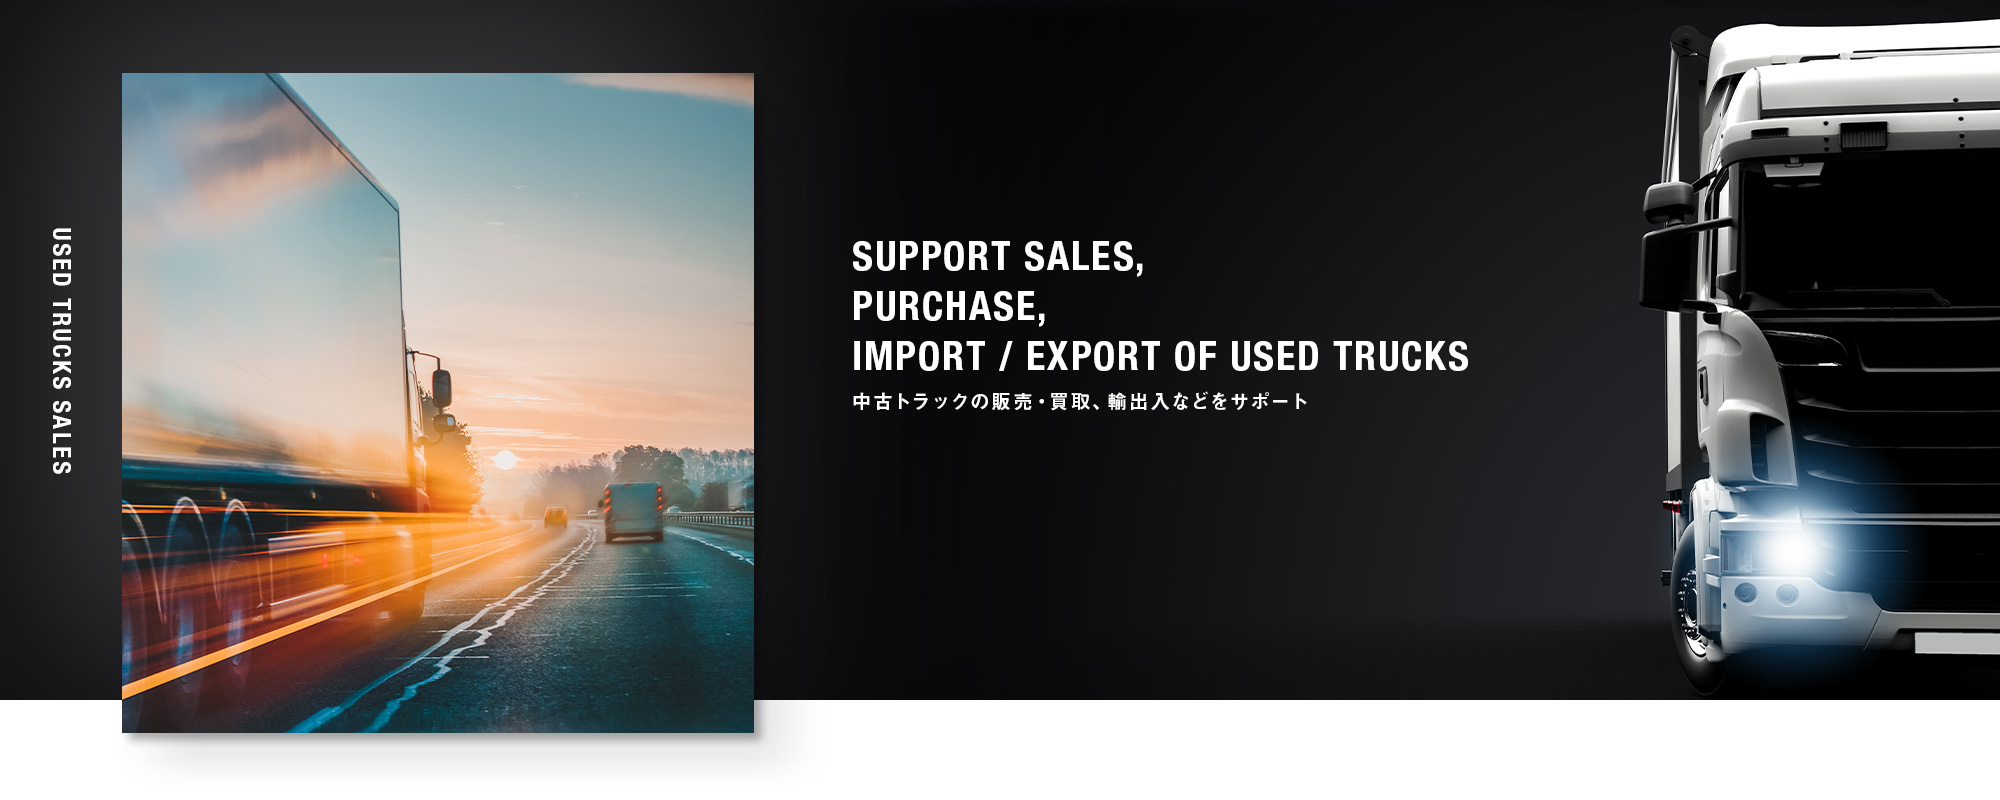 中古トラックの販売・買取、輸出入などをサポート